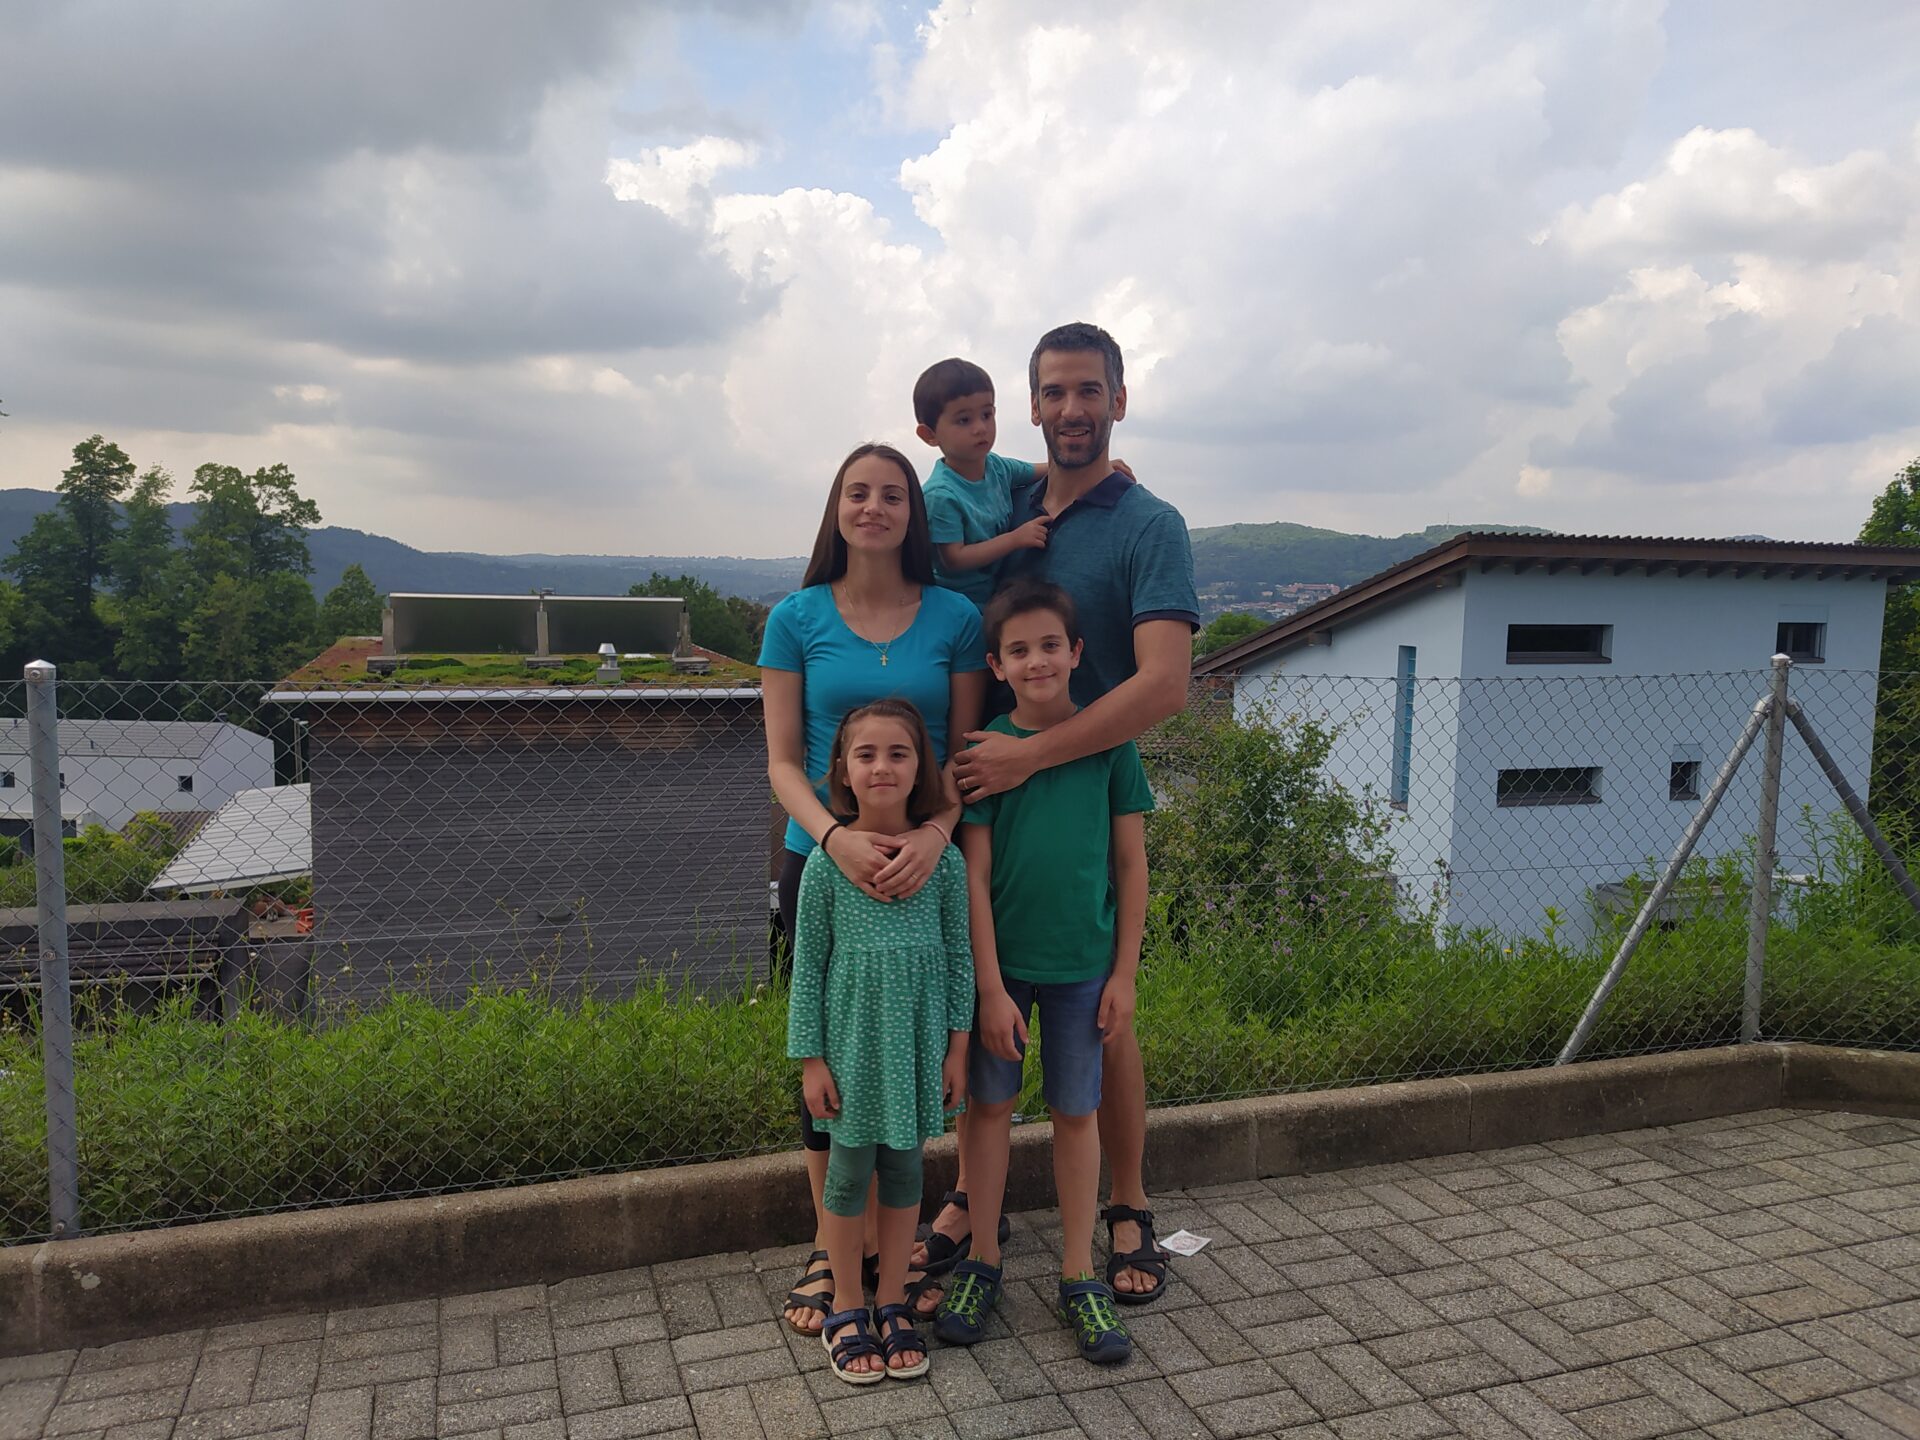 La famiglia Bisco: Arianna e Alberto con i piccoli Leonardo, Miriam e Gabriele. Hanno scelto di vestirsi di verde per "dare speranza alle famiglie".